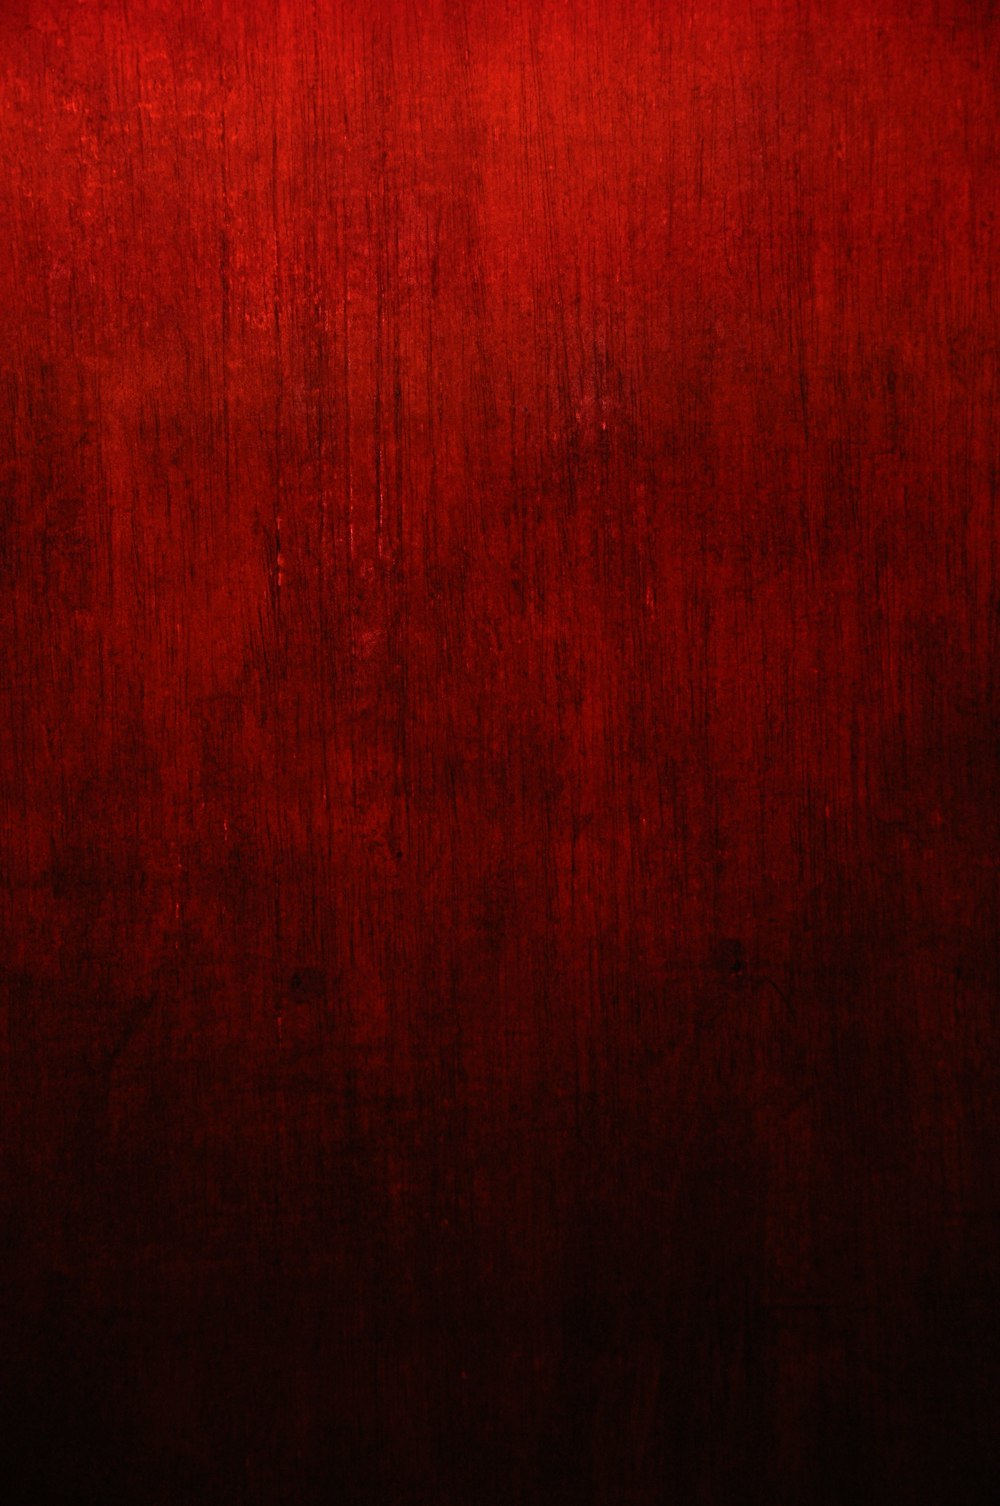 Ảnh texture đỏ: Bộ sưu tập Ảnh texture đỏ sẽ đem đến cho bạn những trải nghiệm mới lạ về màu sắc và kết cấu. Những hình ảnh với màu đỏ đậm và texture độc đáo sẽ giúp cho dự án tiếp cận với khán giả một cách hoàn toàn mới lạ và bắt mắt hơn. Hãy truy cập ngay để khám phá bộ sưu tập này nhé!